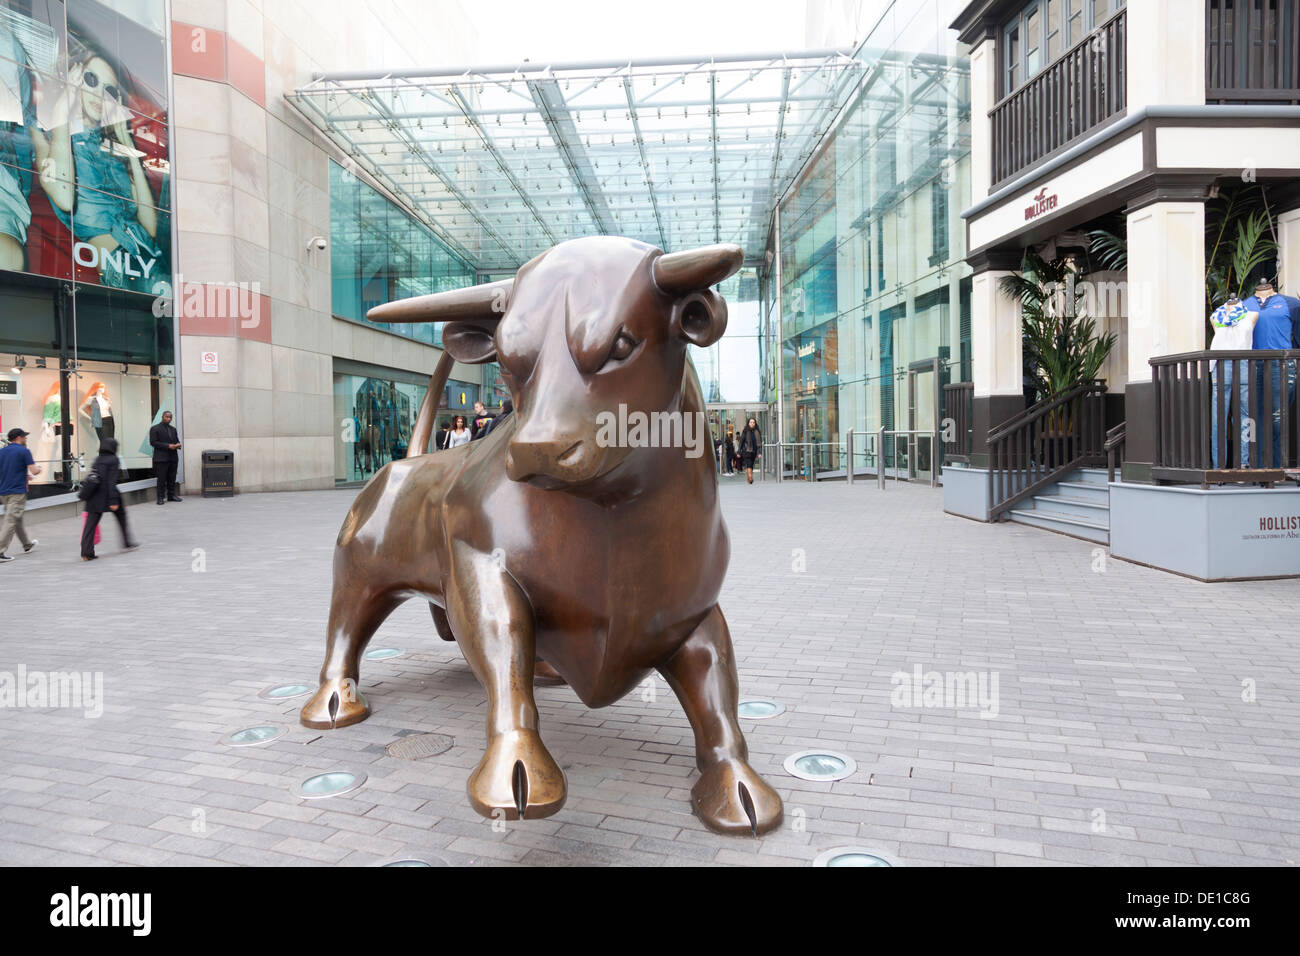 Royaume-uni, Birmingham, le taureau de bronze statue dans le centre commercial Bull Ring. Banque D'Images